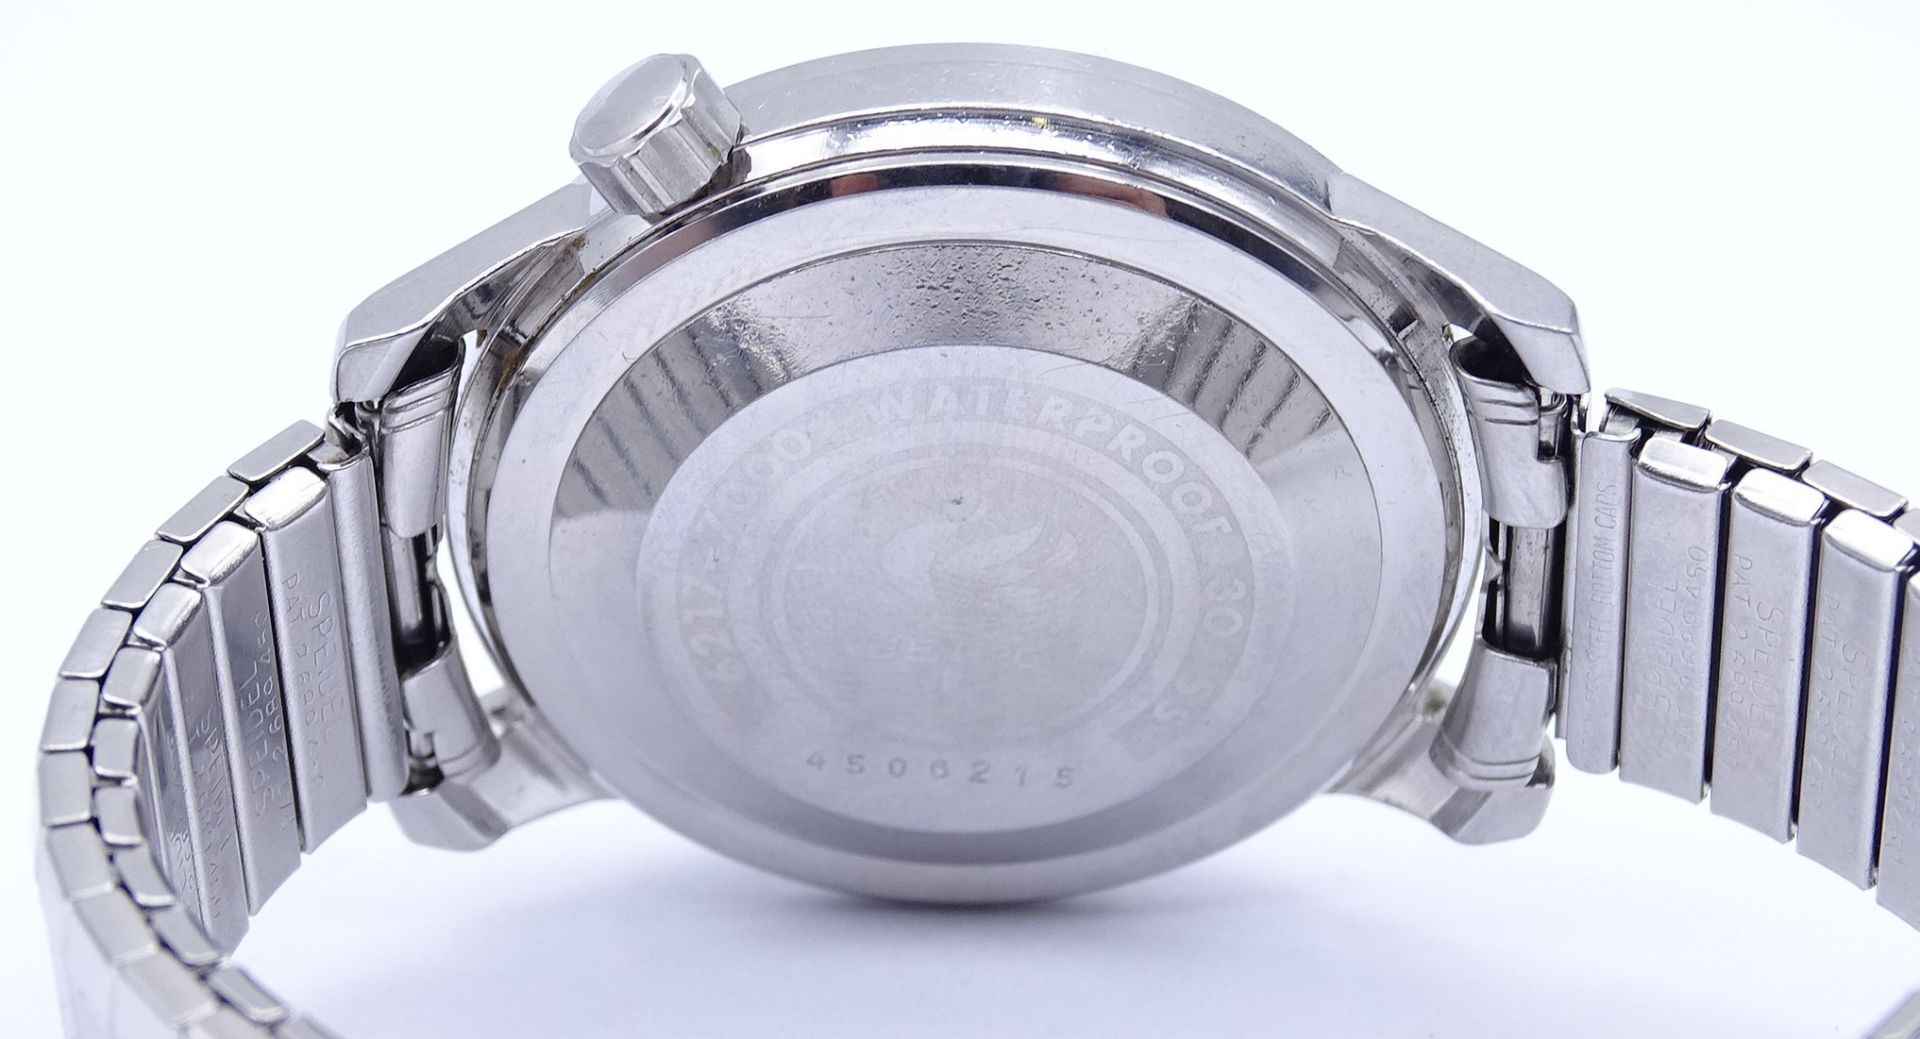 Herren Armbanduhr SEIKO World Timer, 6217, Automatikwerk, Werk läuft, D. 37mm, Glas mit Kratzern - Image 5 of 5